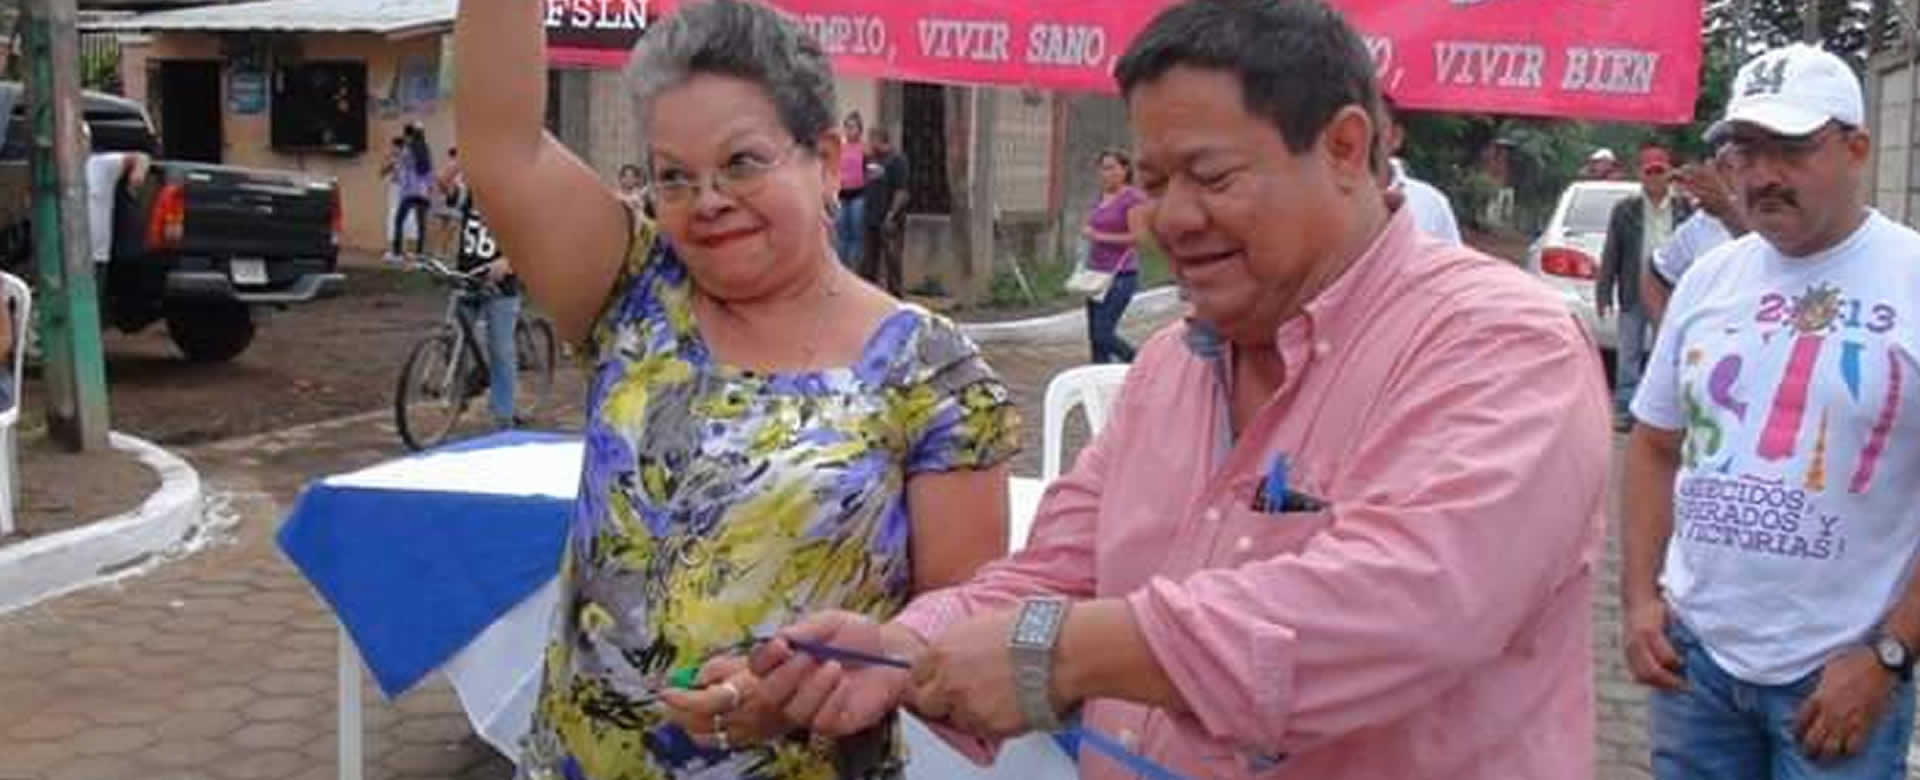 Fallece en accidente de tránsito el ex alcalde Sandinista de Chinandega